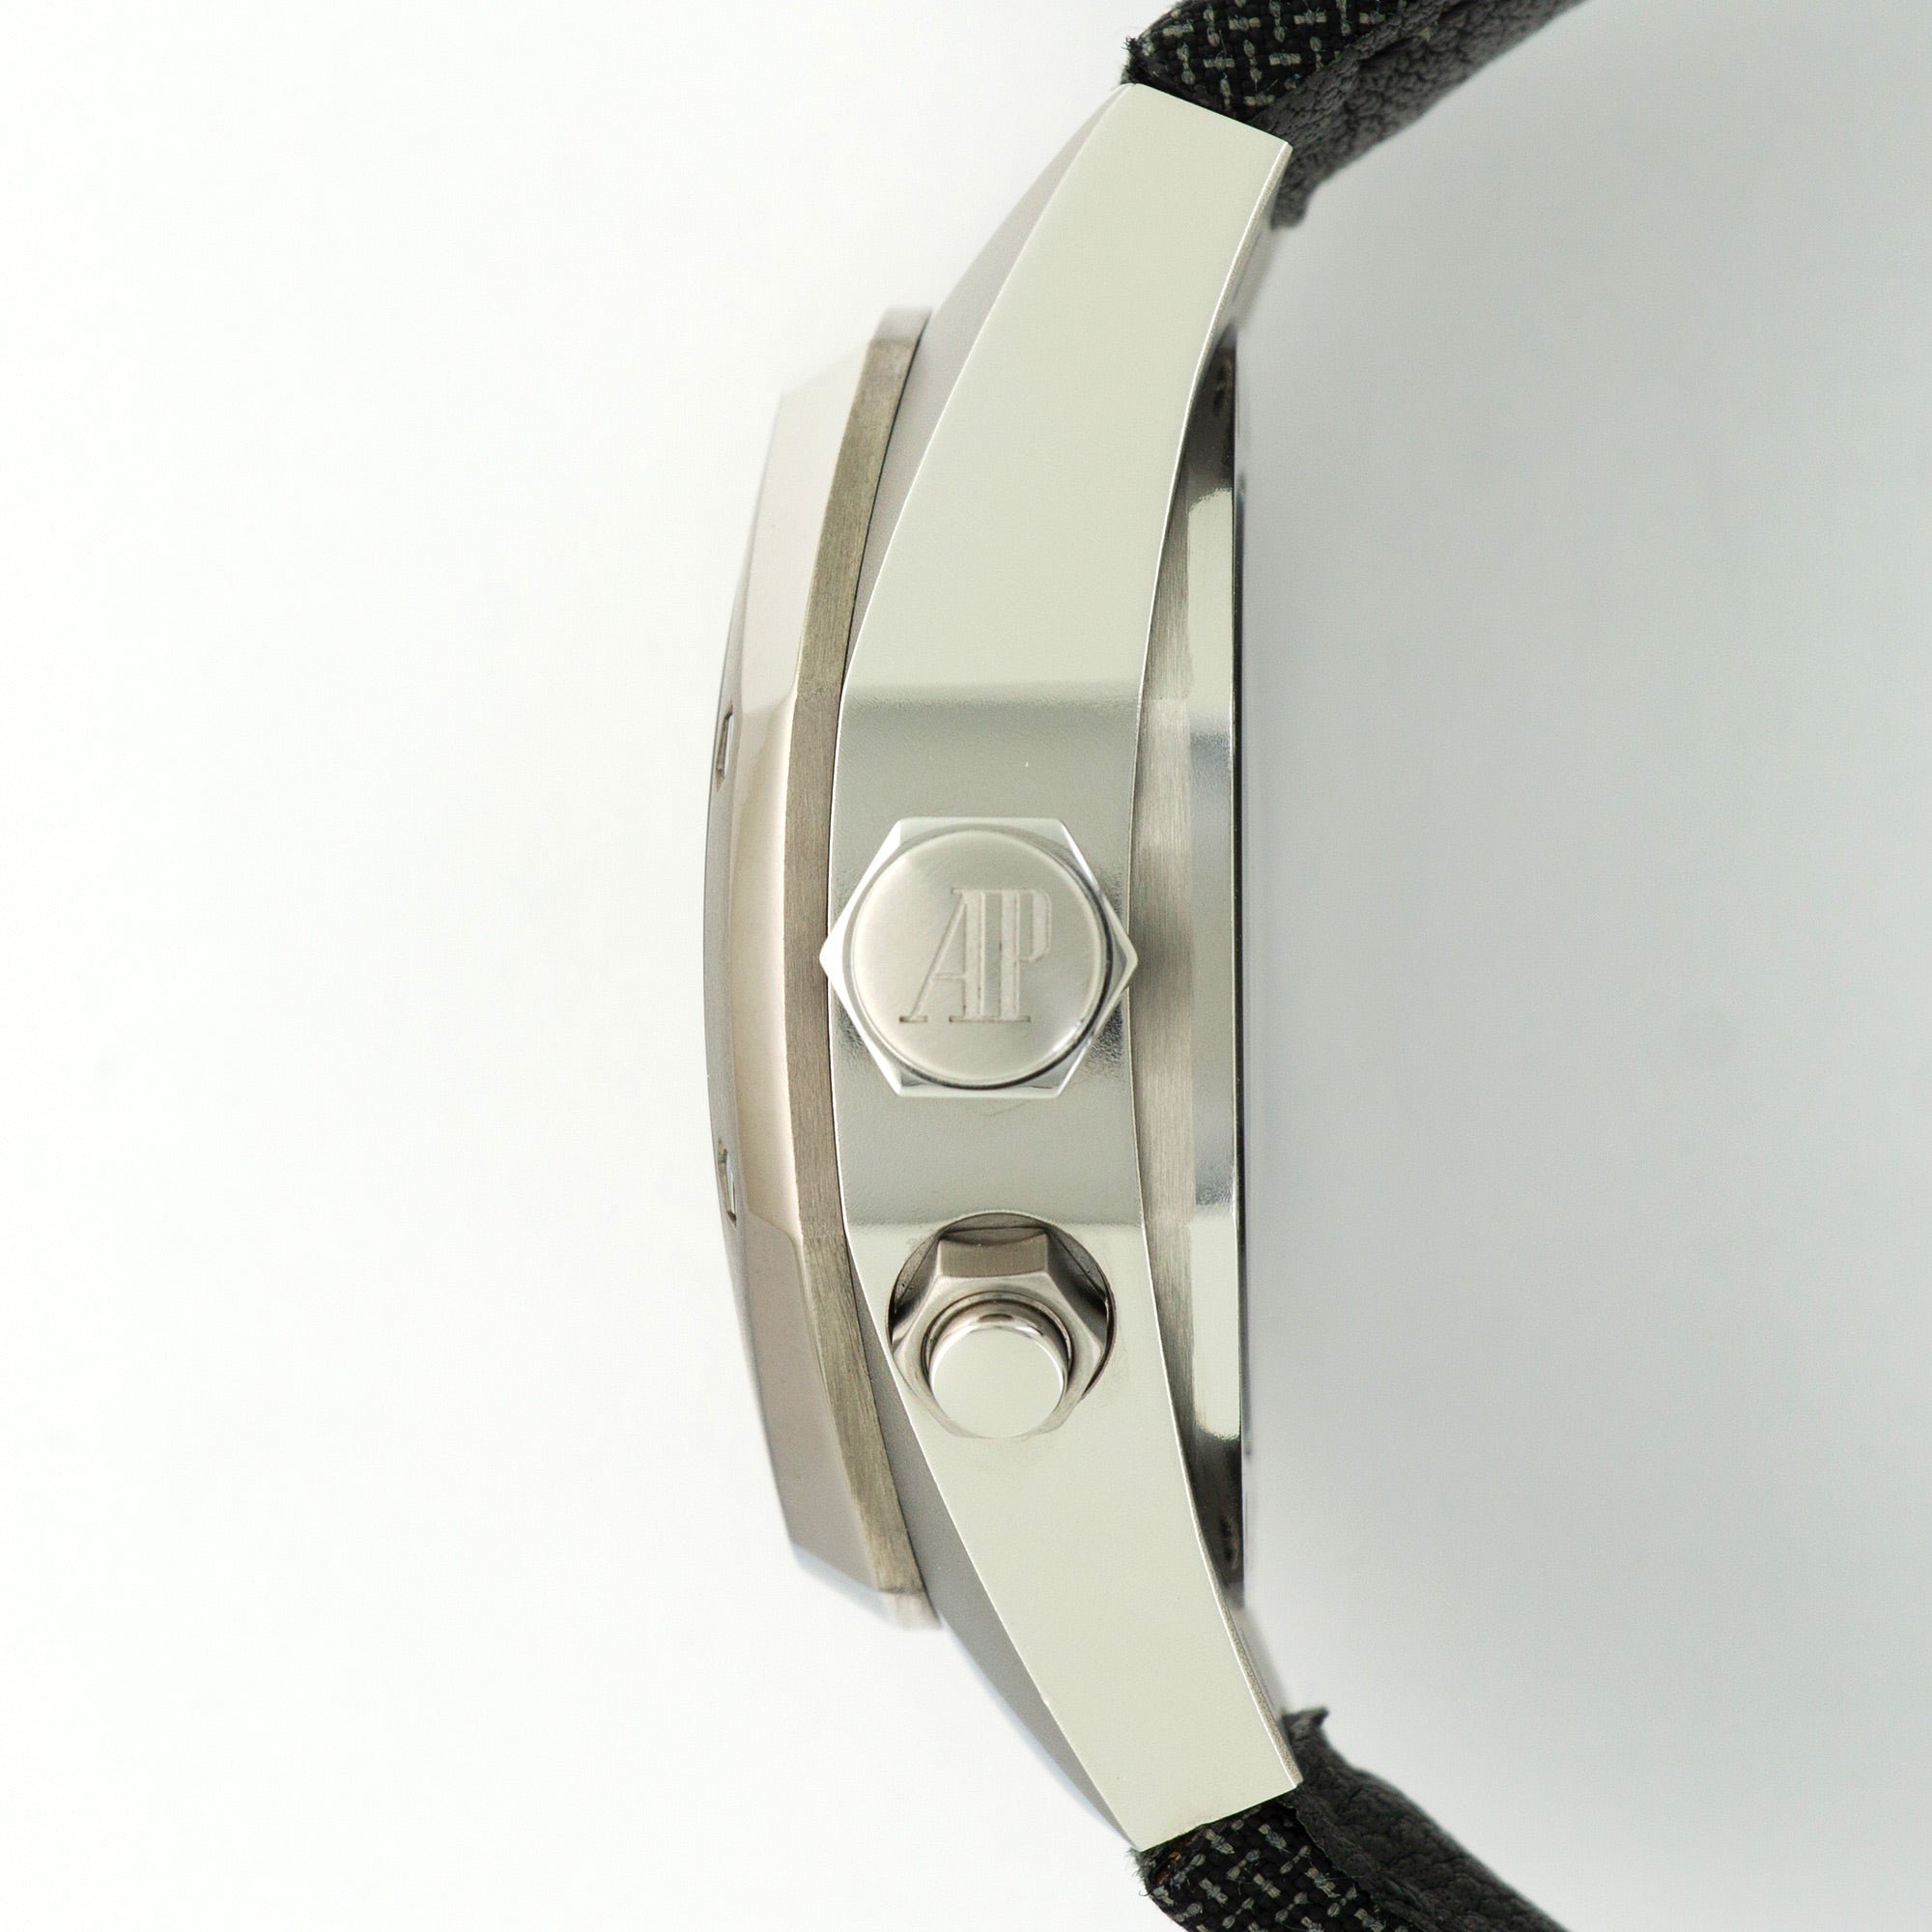 Audemars Piguet - Audemars Piguet Alacrite Concept CW1 Watch Ref. 25980 - The Keystone Watches